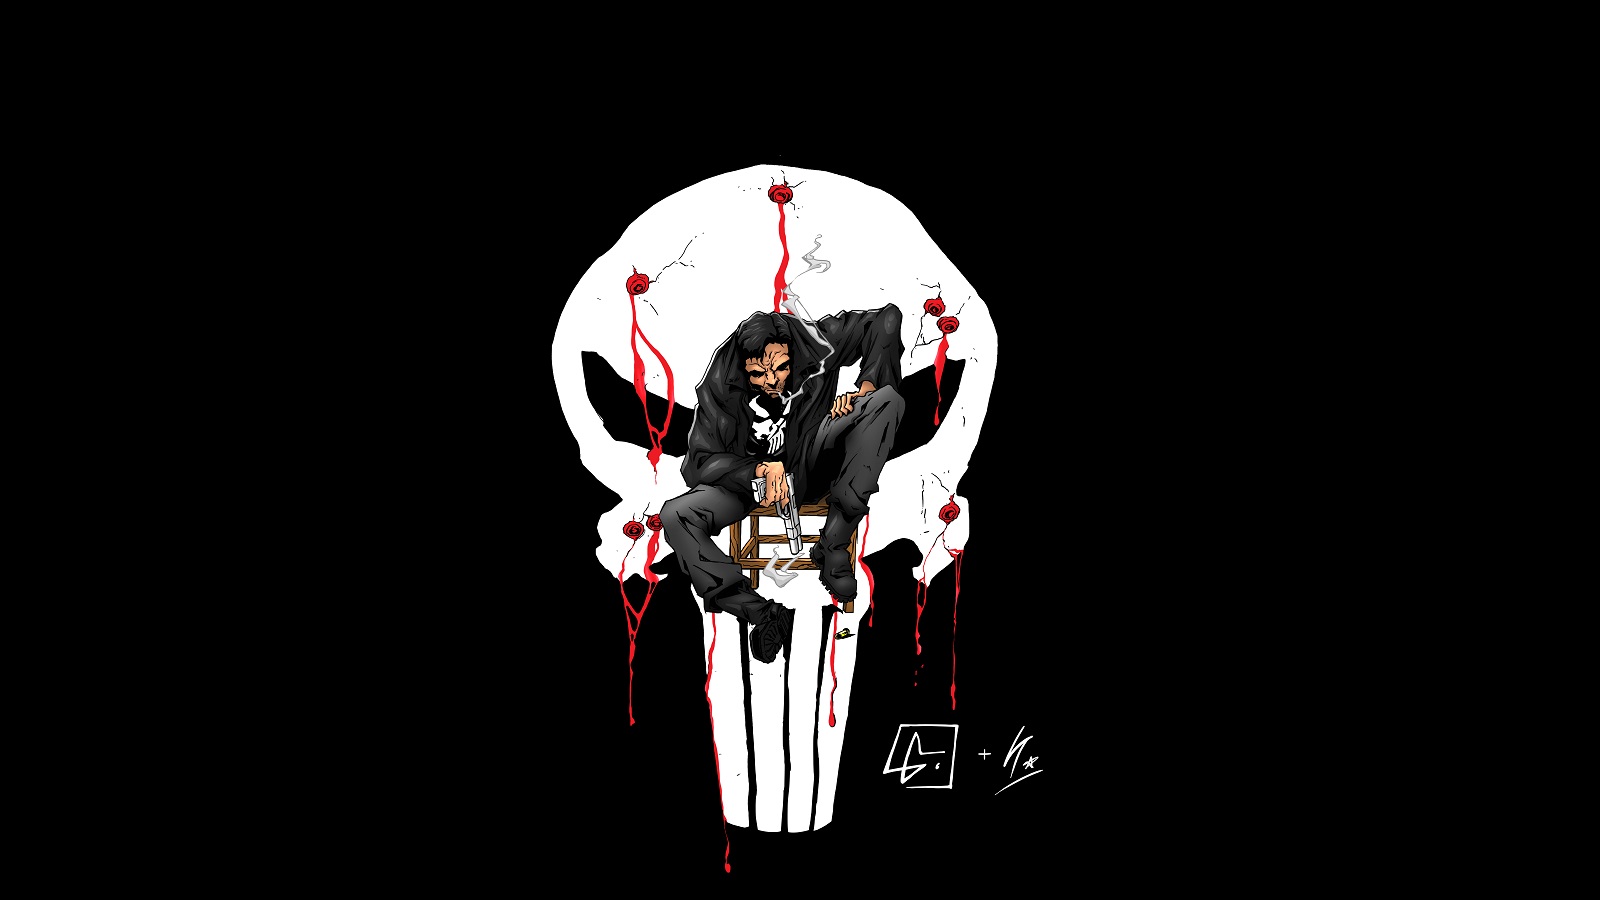 Punisher Logo DC Blood Black wallpaper 1600x900 171813 1600x900